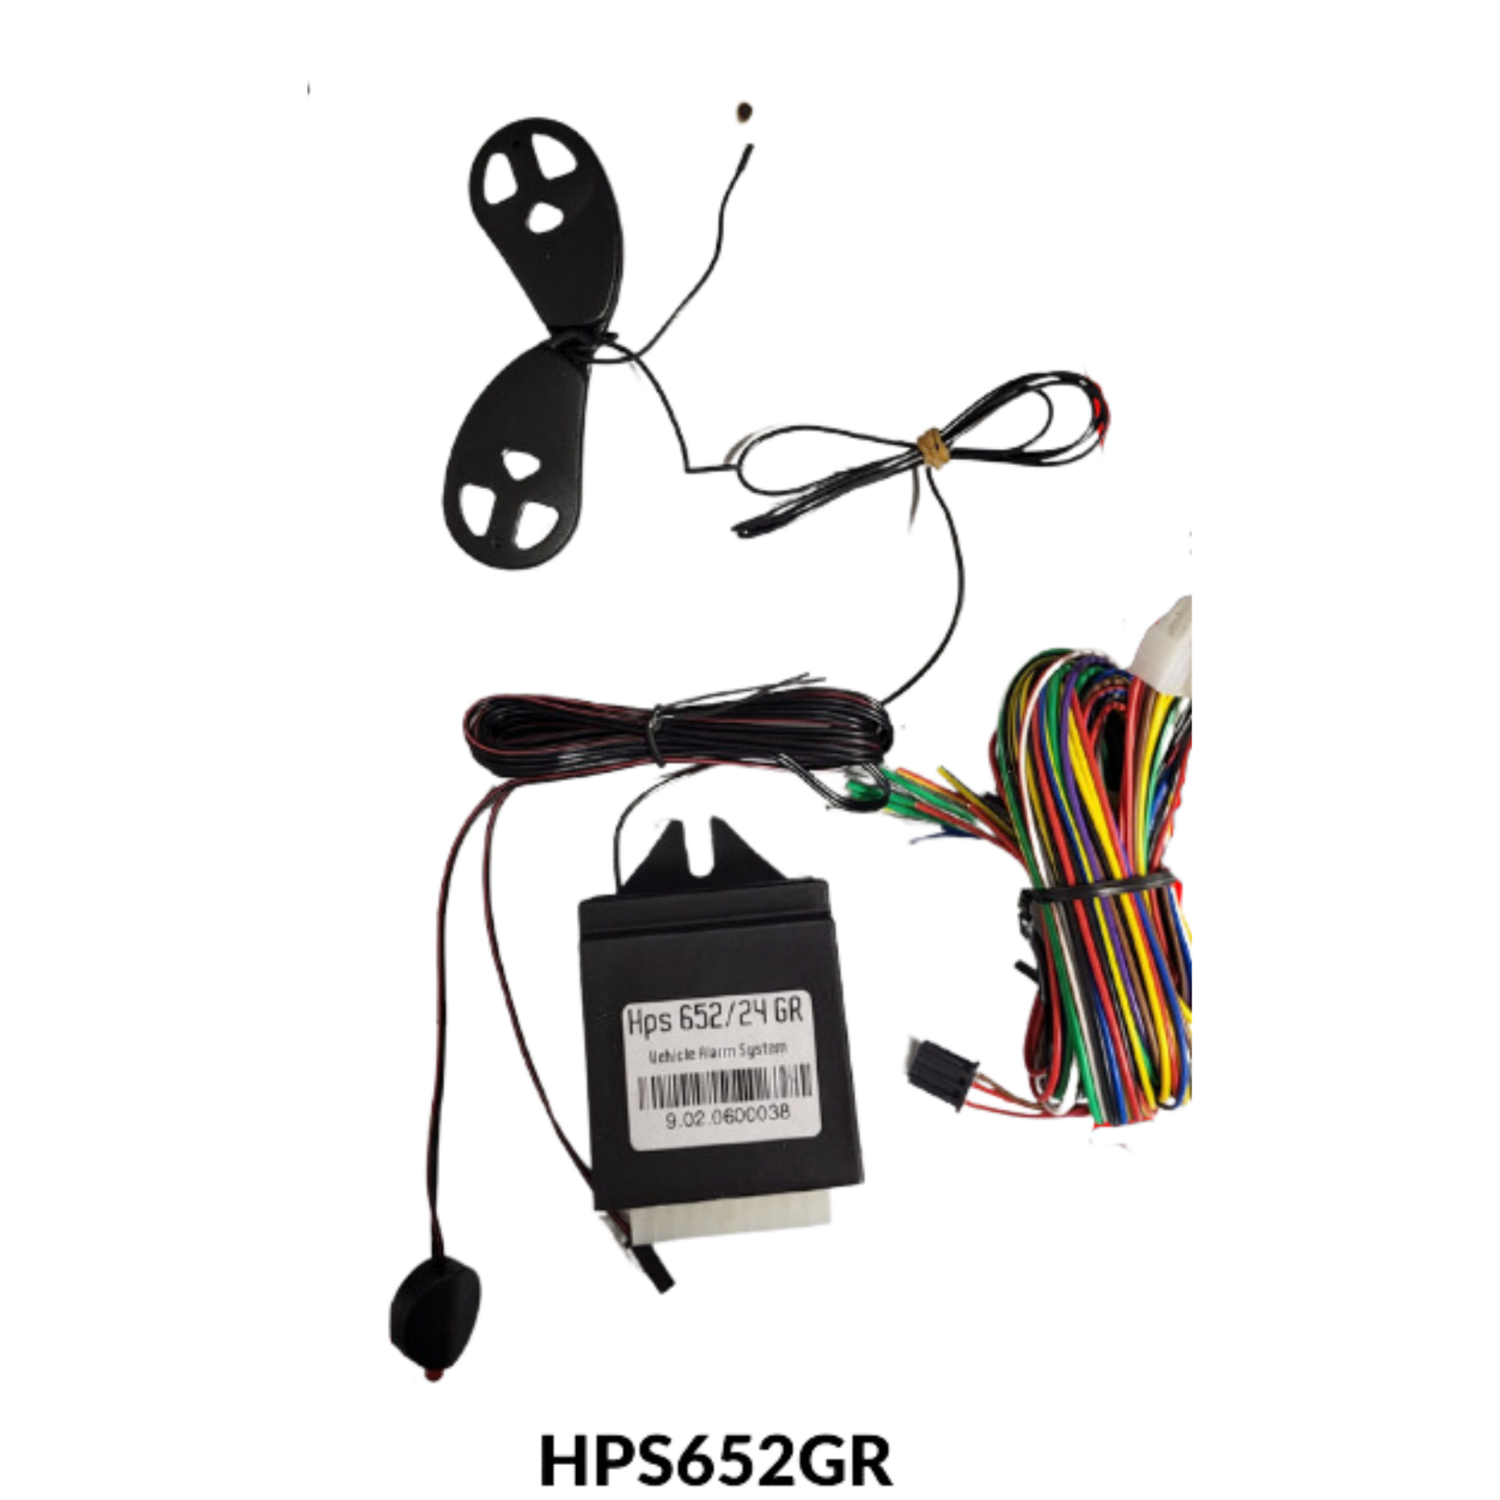 HPS609 Alarm system with HPS94 siren (24V)